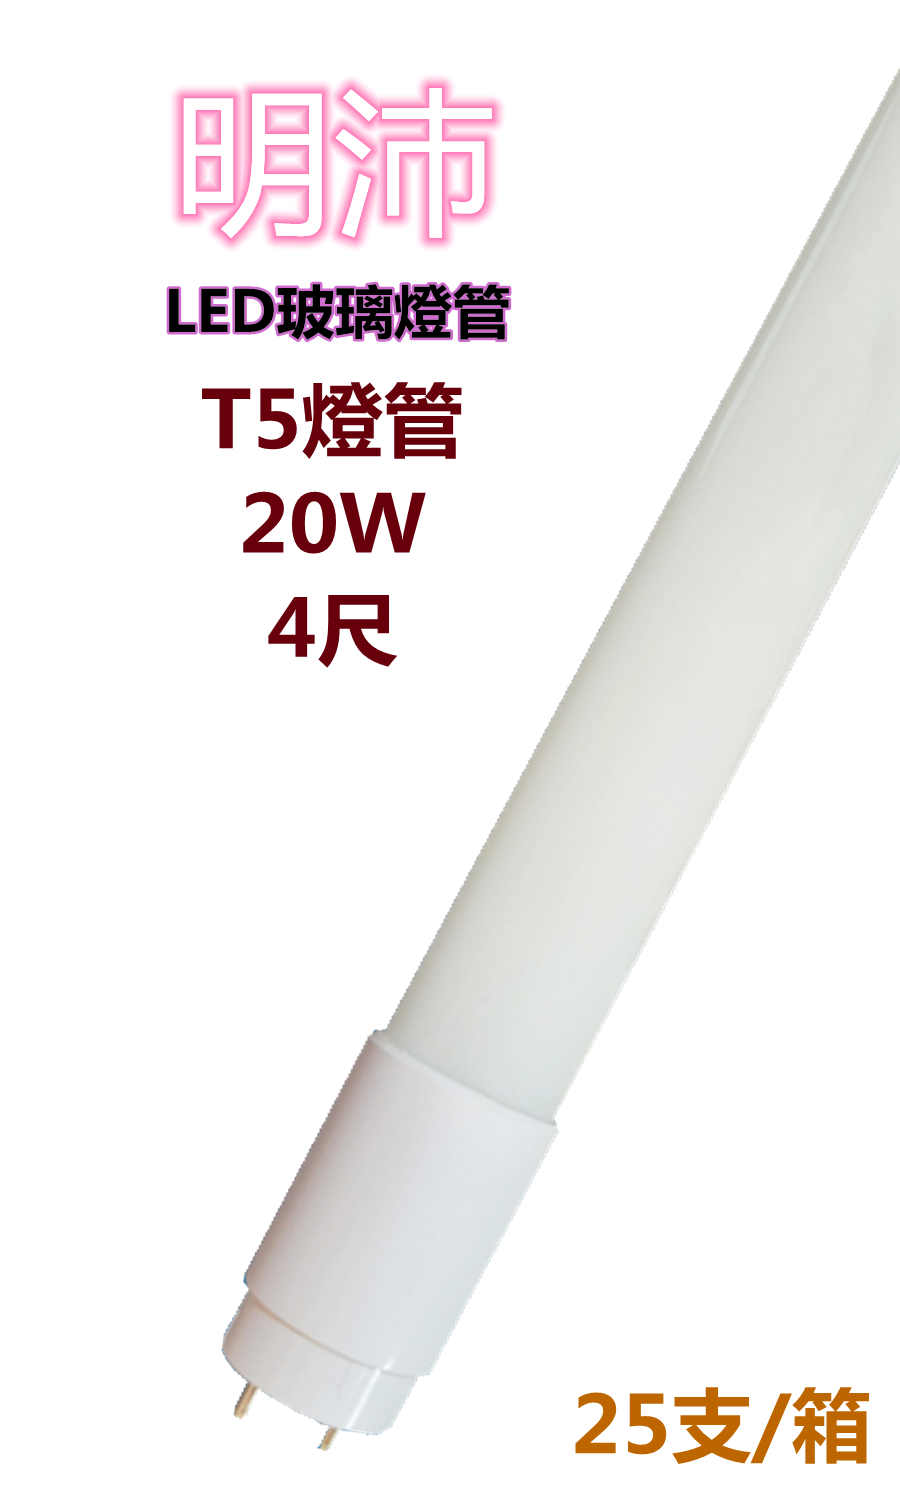 【明沛】T5燈管 LED高亮度燈管 20W (4尺-白光) MP5760 ※購買以箱為單位※每箱25支※